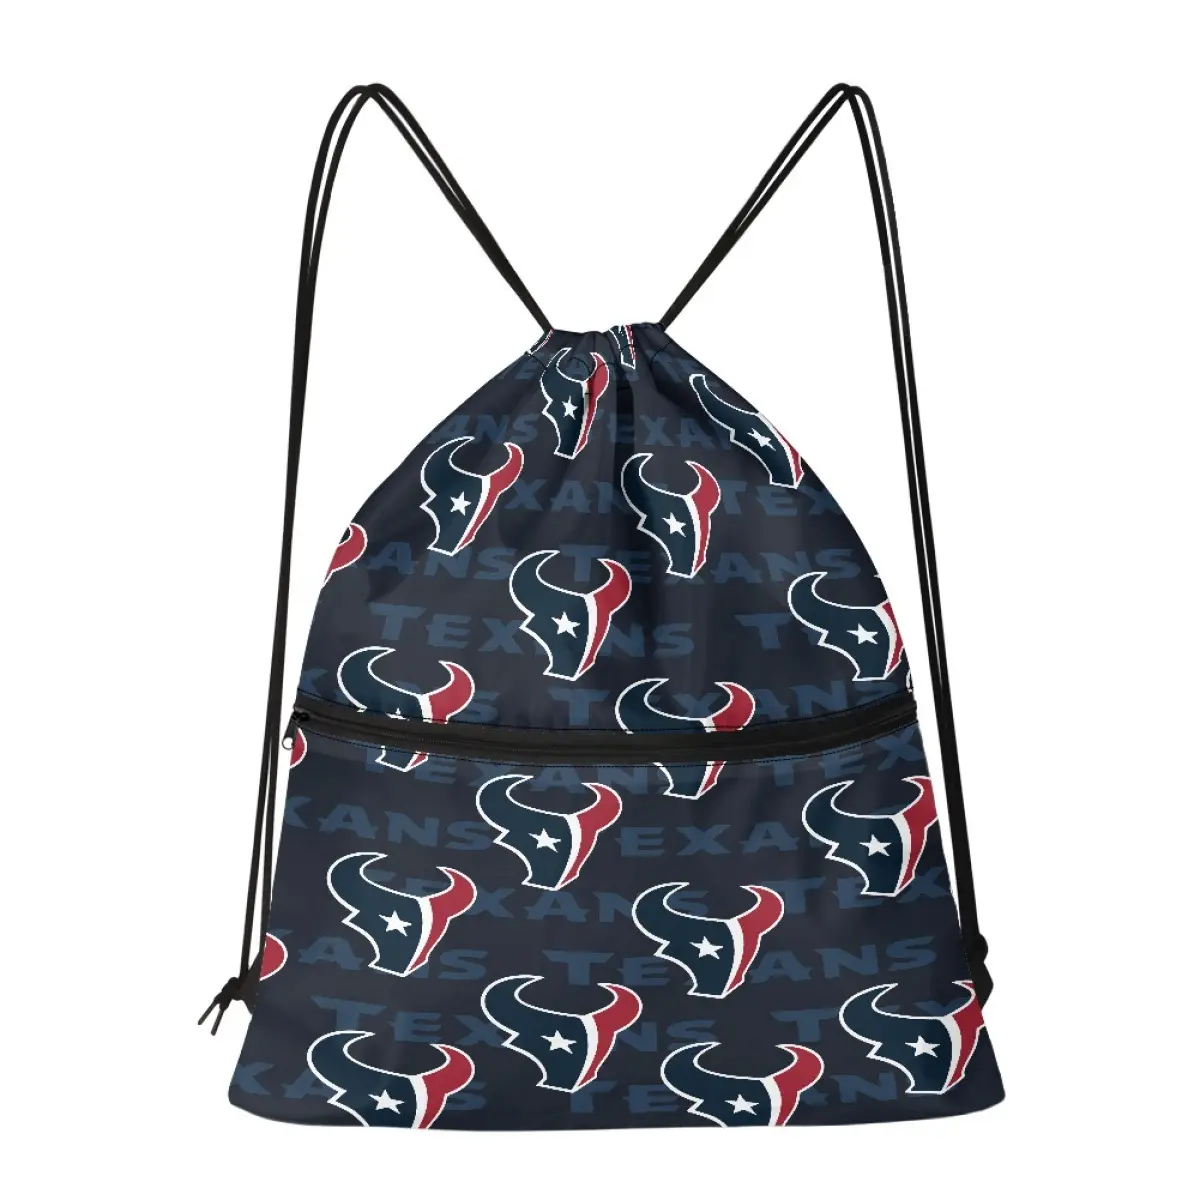 도매 휴스턴 텍산스 졸라매는 끈 가방 간단한 캔버스 주최자 휴대용 컬렉션 캔버스 가방 NFL 축구 팀